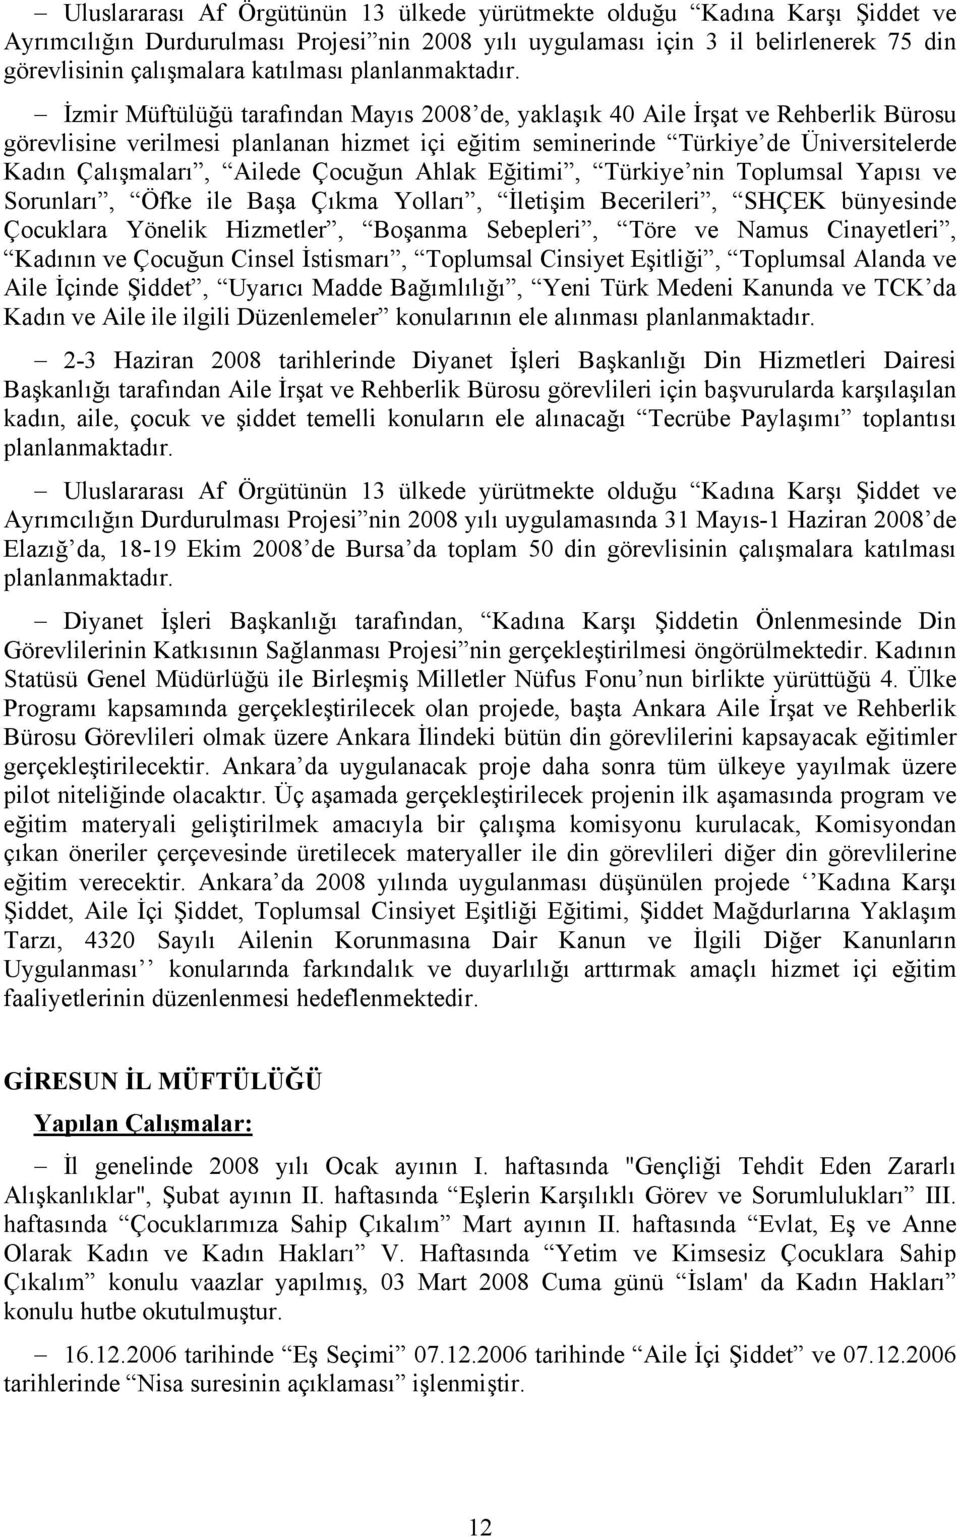 İzmir Müftülüğü tarafından Mayıs 2008 de, yaklaşık 40 Aile İrşat ve Rehberlik Bürosu görevlisine verilmesi planlanan hizmet içi eğitim seminerinde Türkiye de Üniversitelerde Kadın Çalışmaları, Ailede